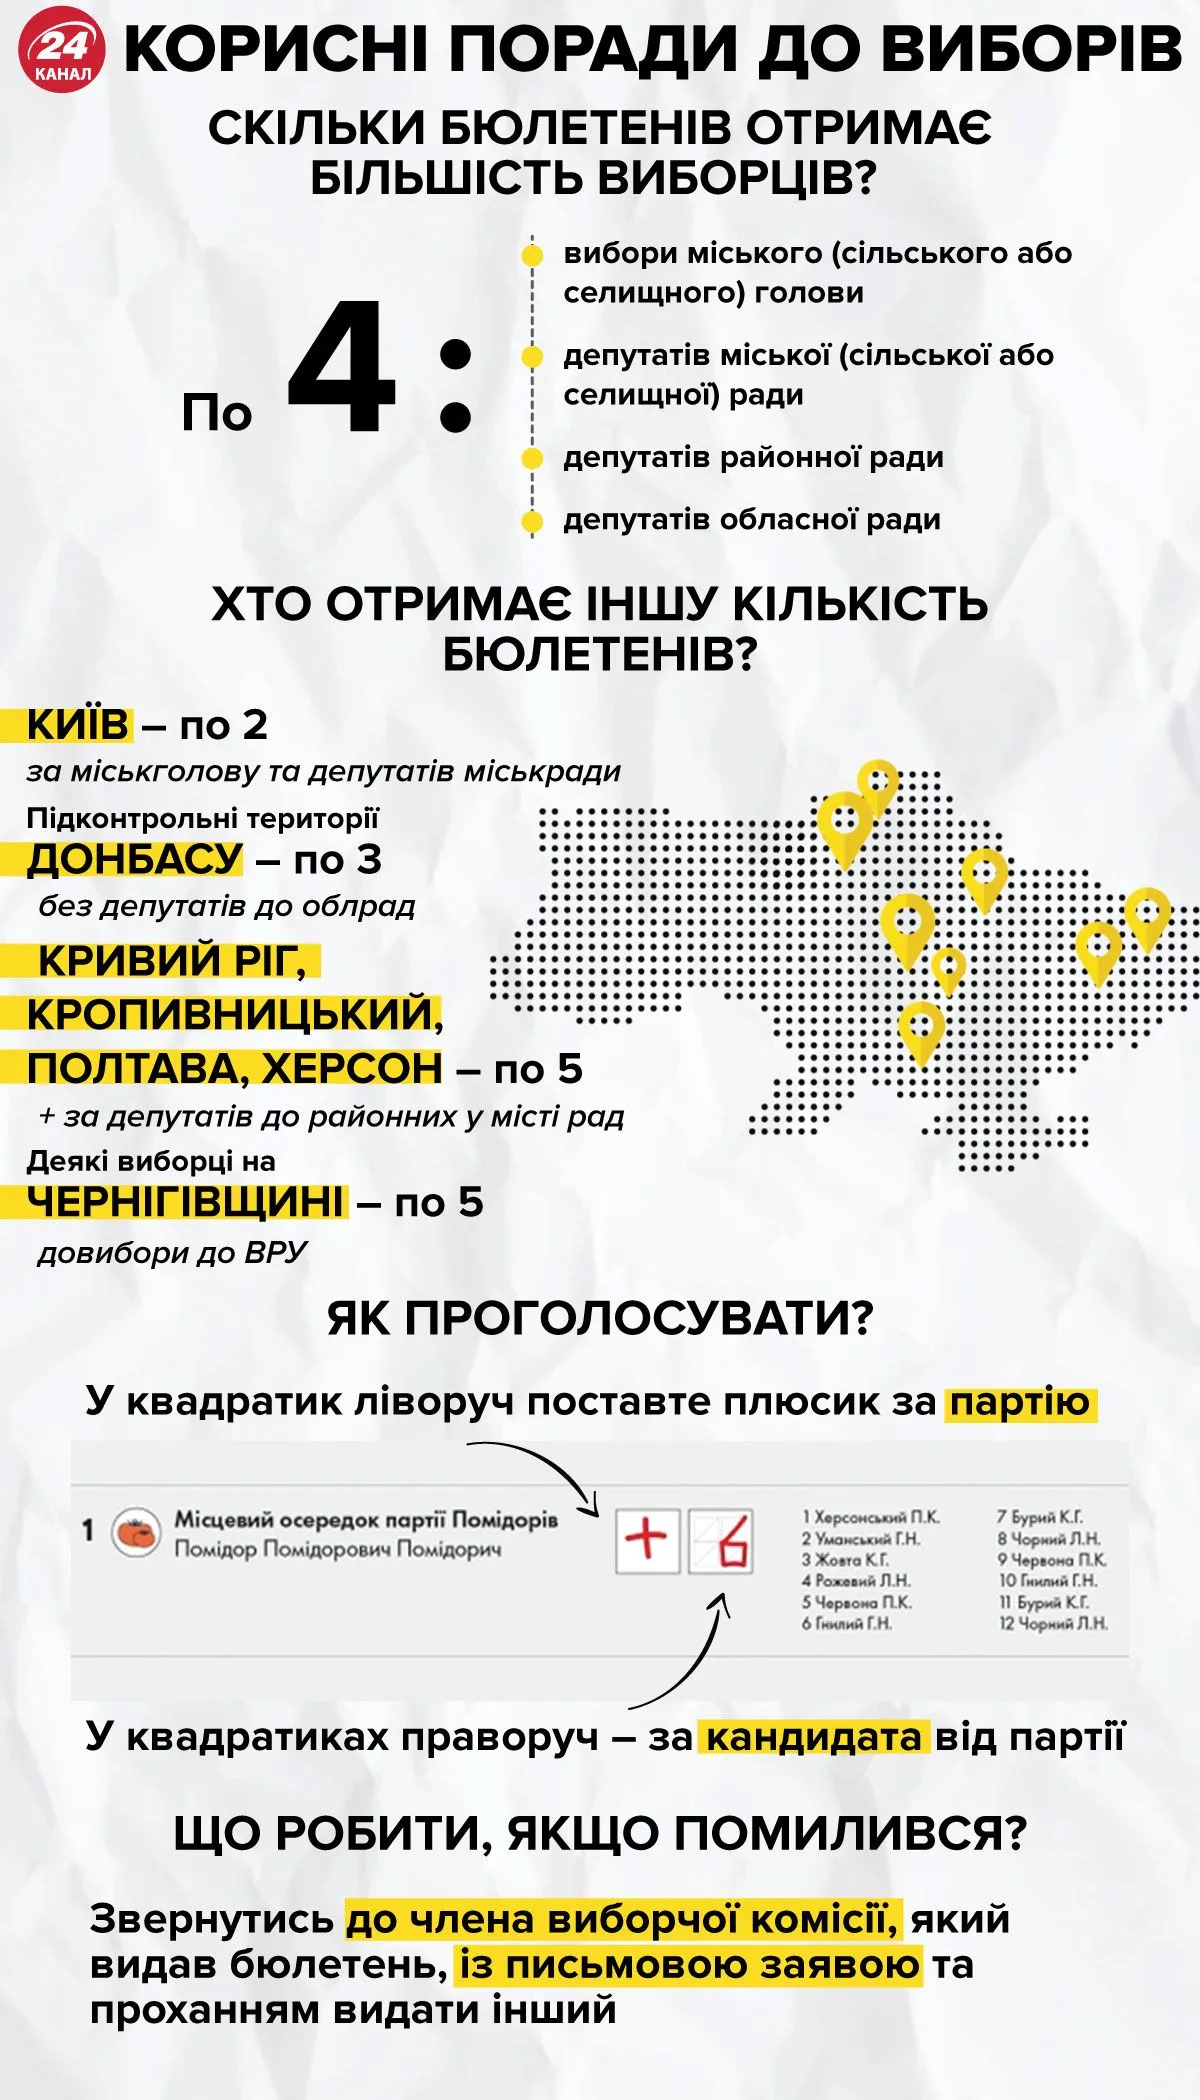 Кількість бюлетенів у виборця / Інфографіка 24 каналу